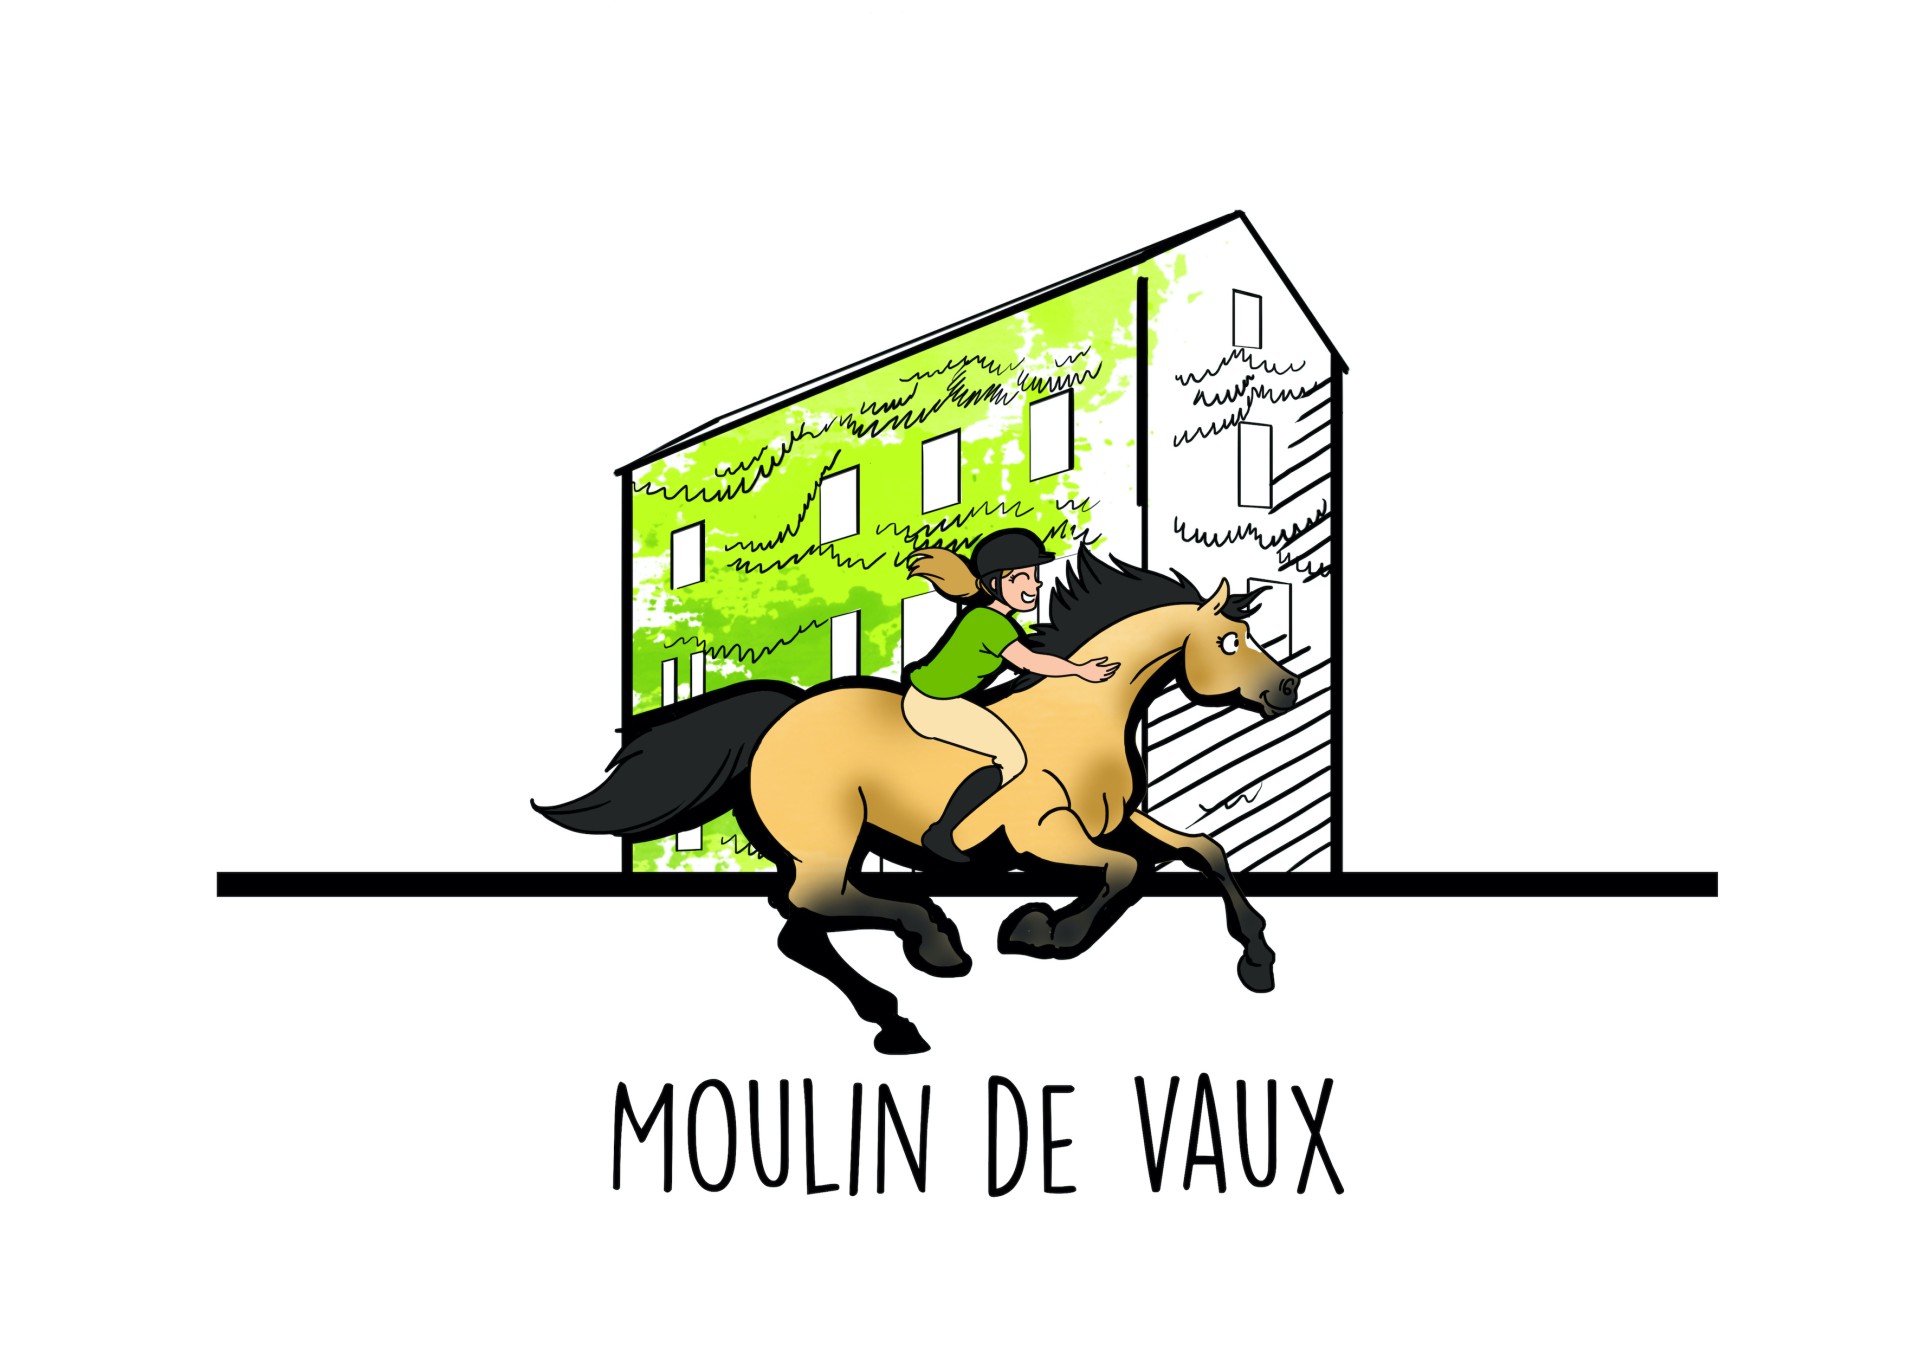 Le Moulin de Vaux